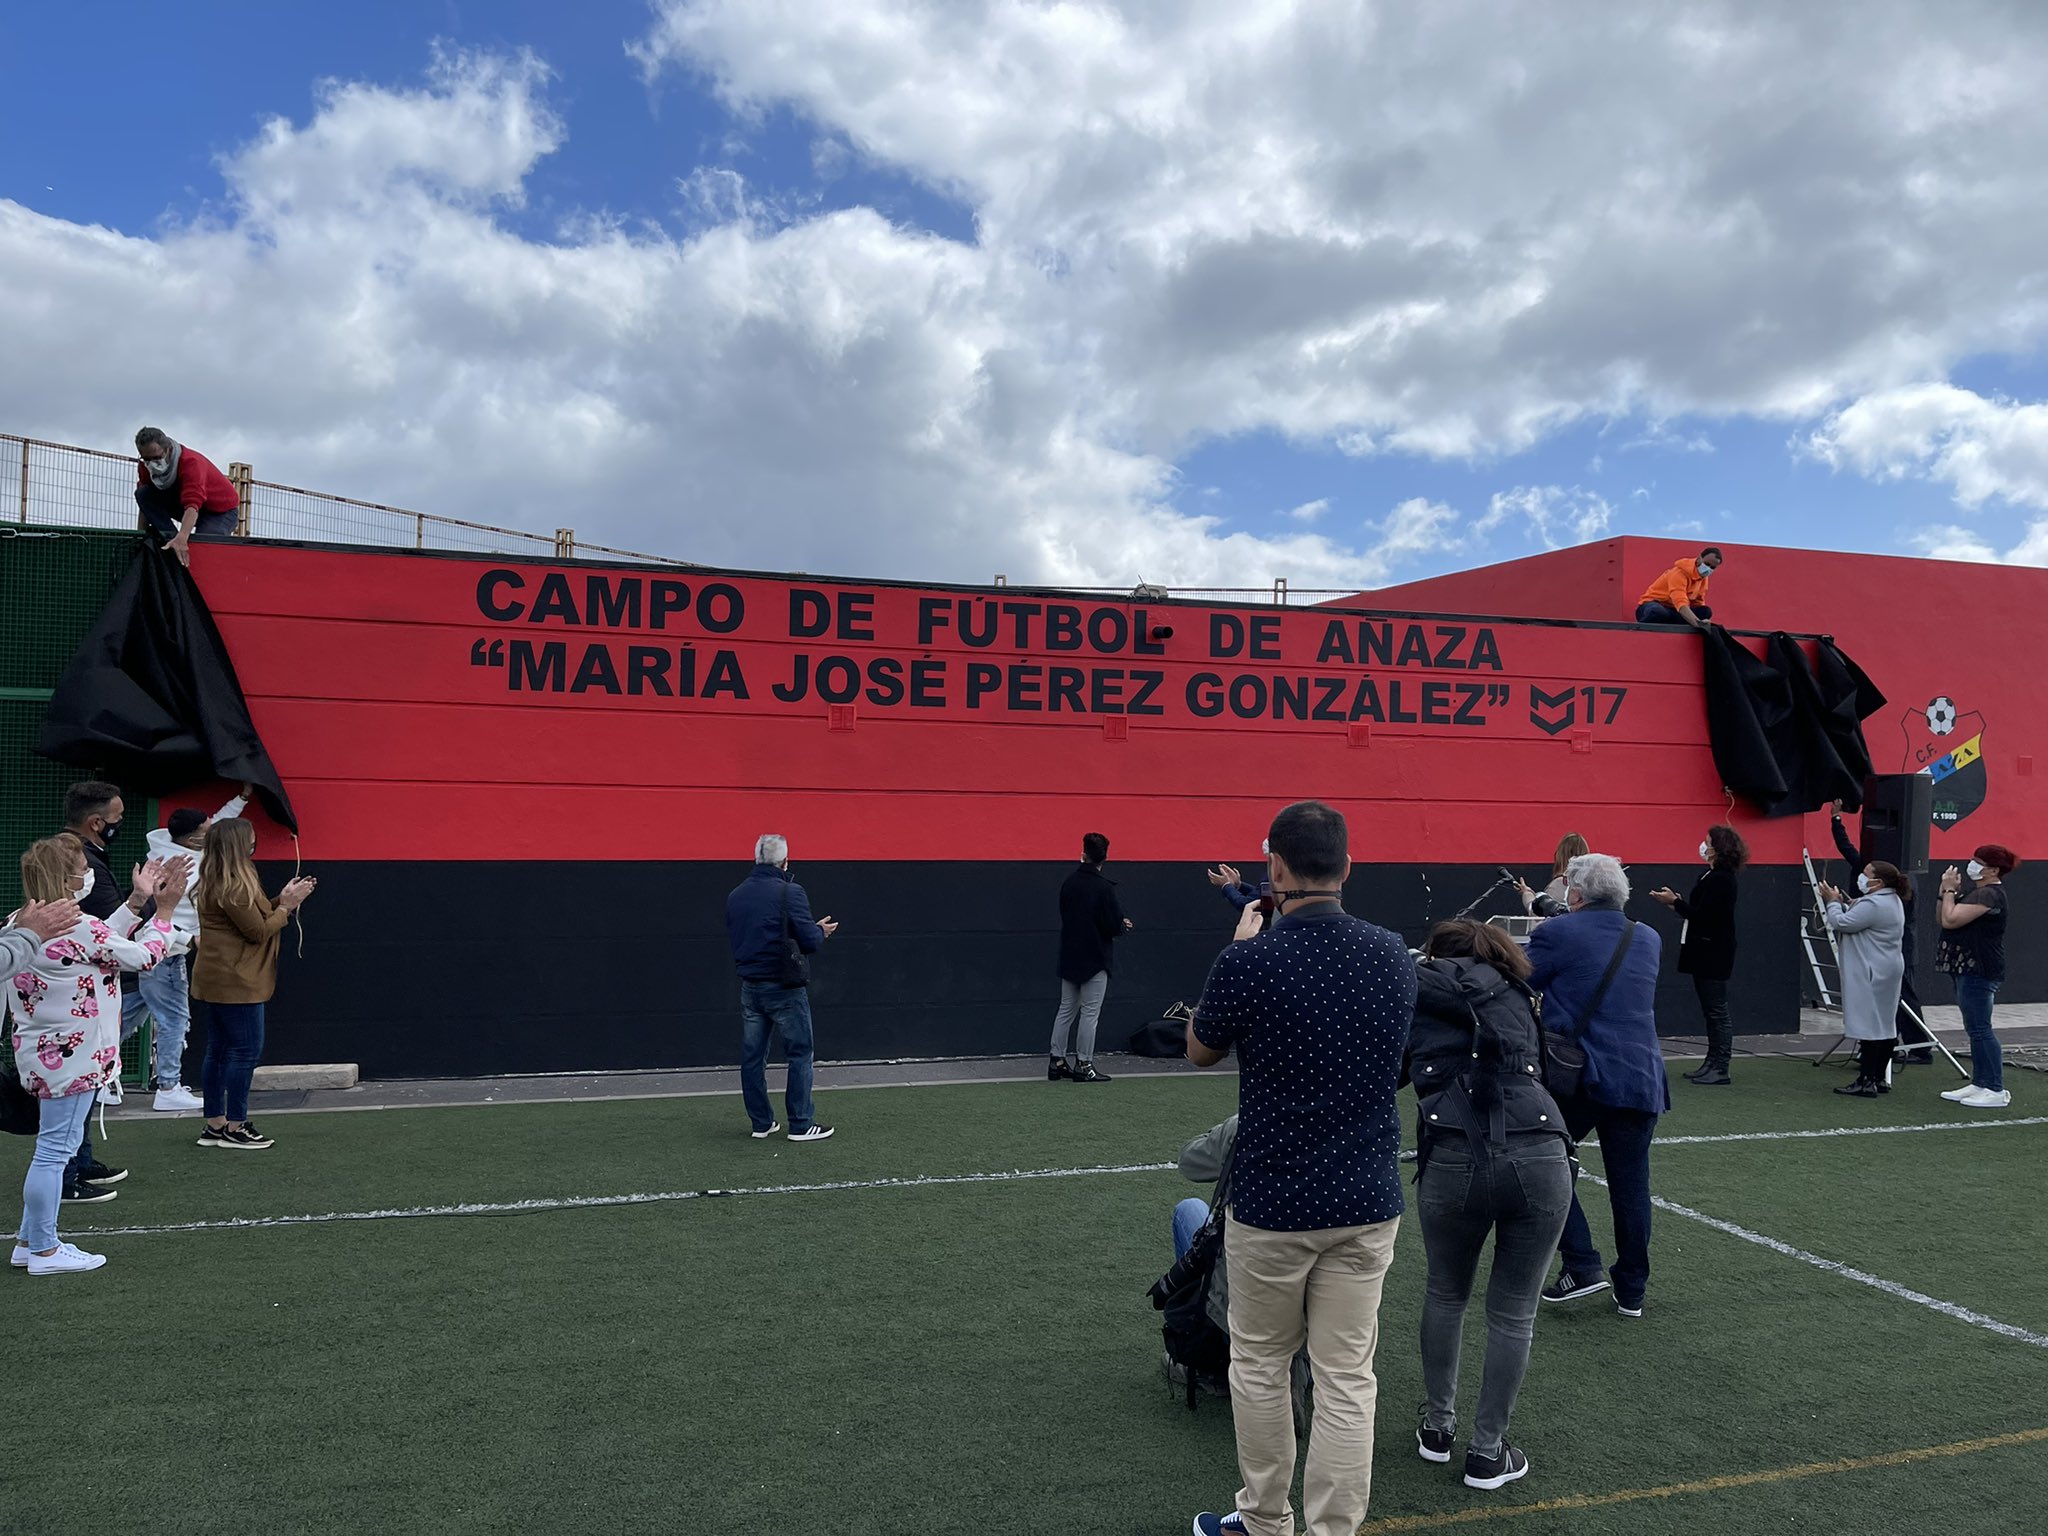 El campo de fútbol "María José Pérez González" ya es una realidad